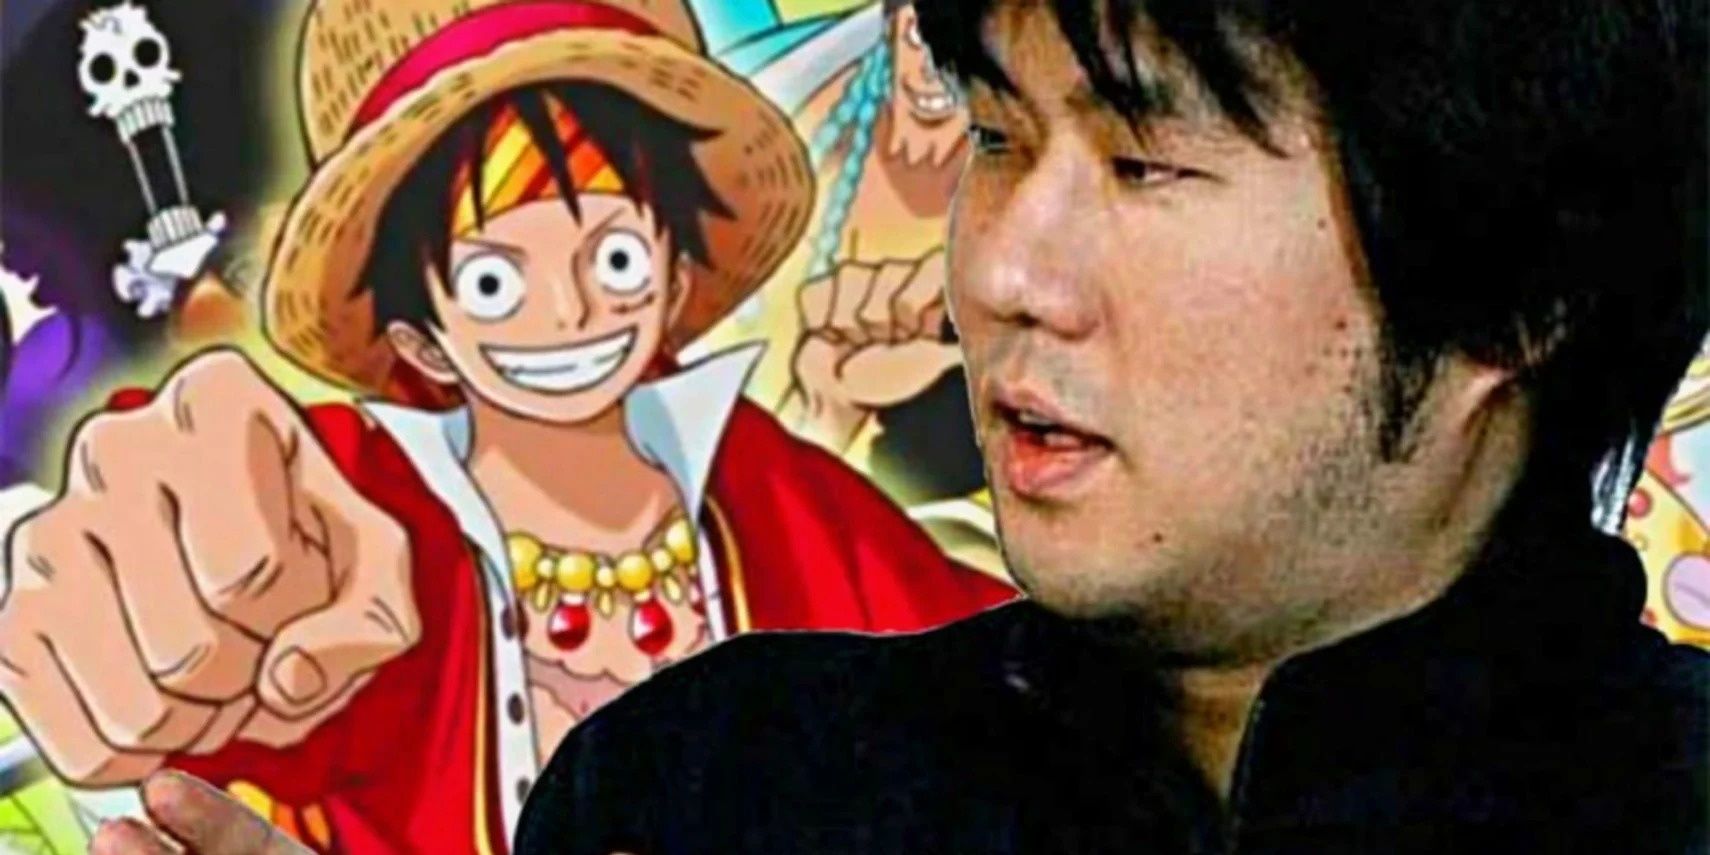 Oda One Piece